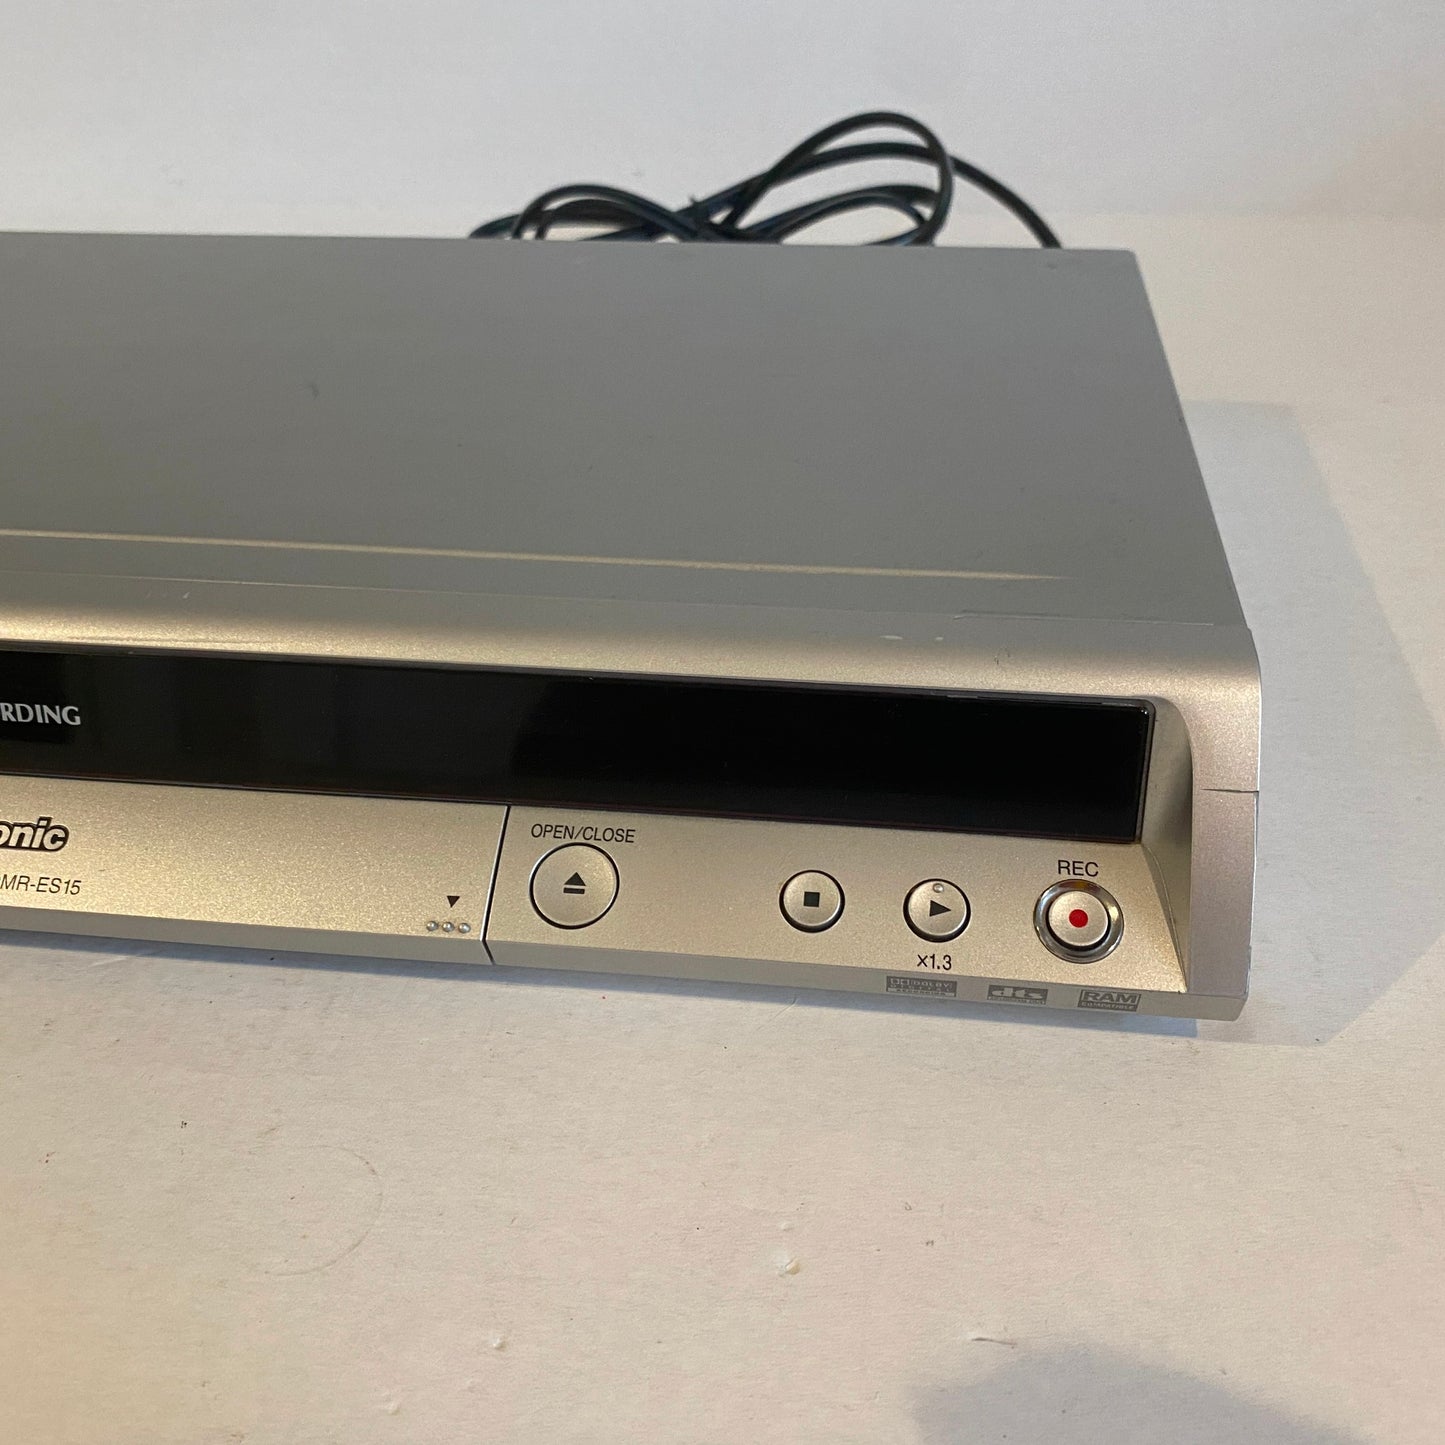 Panasonic Analog DVD Recorder - DMR-ES15